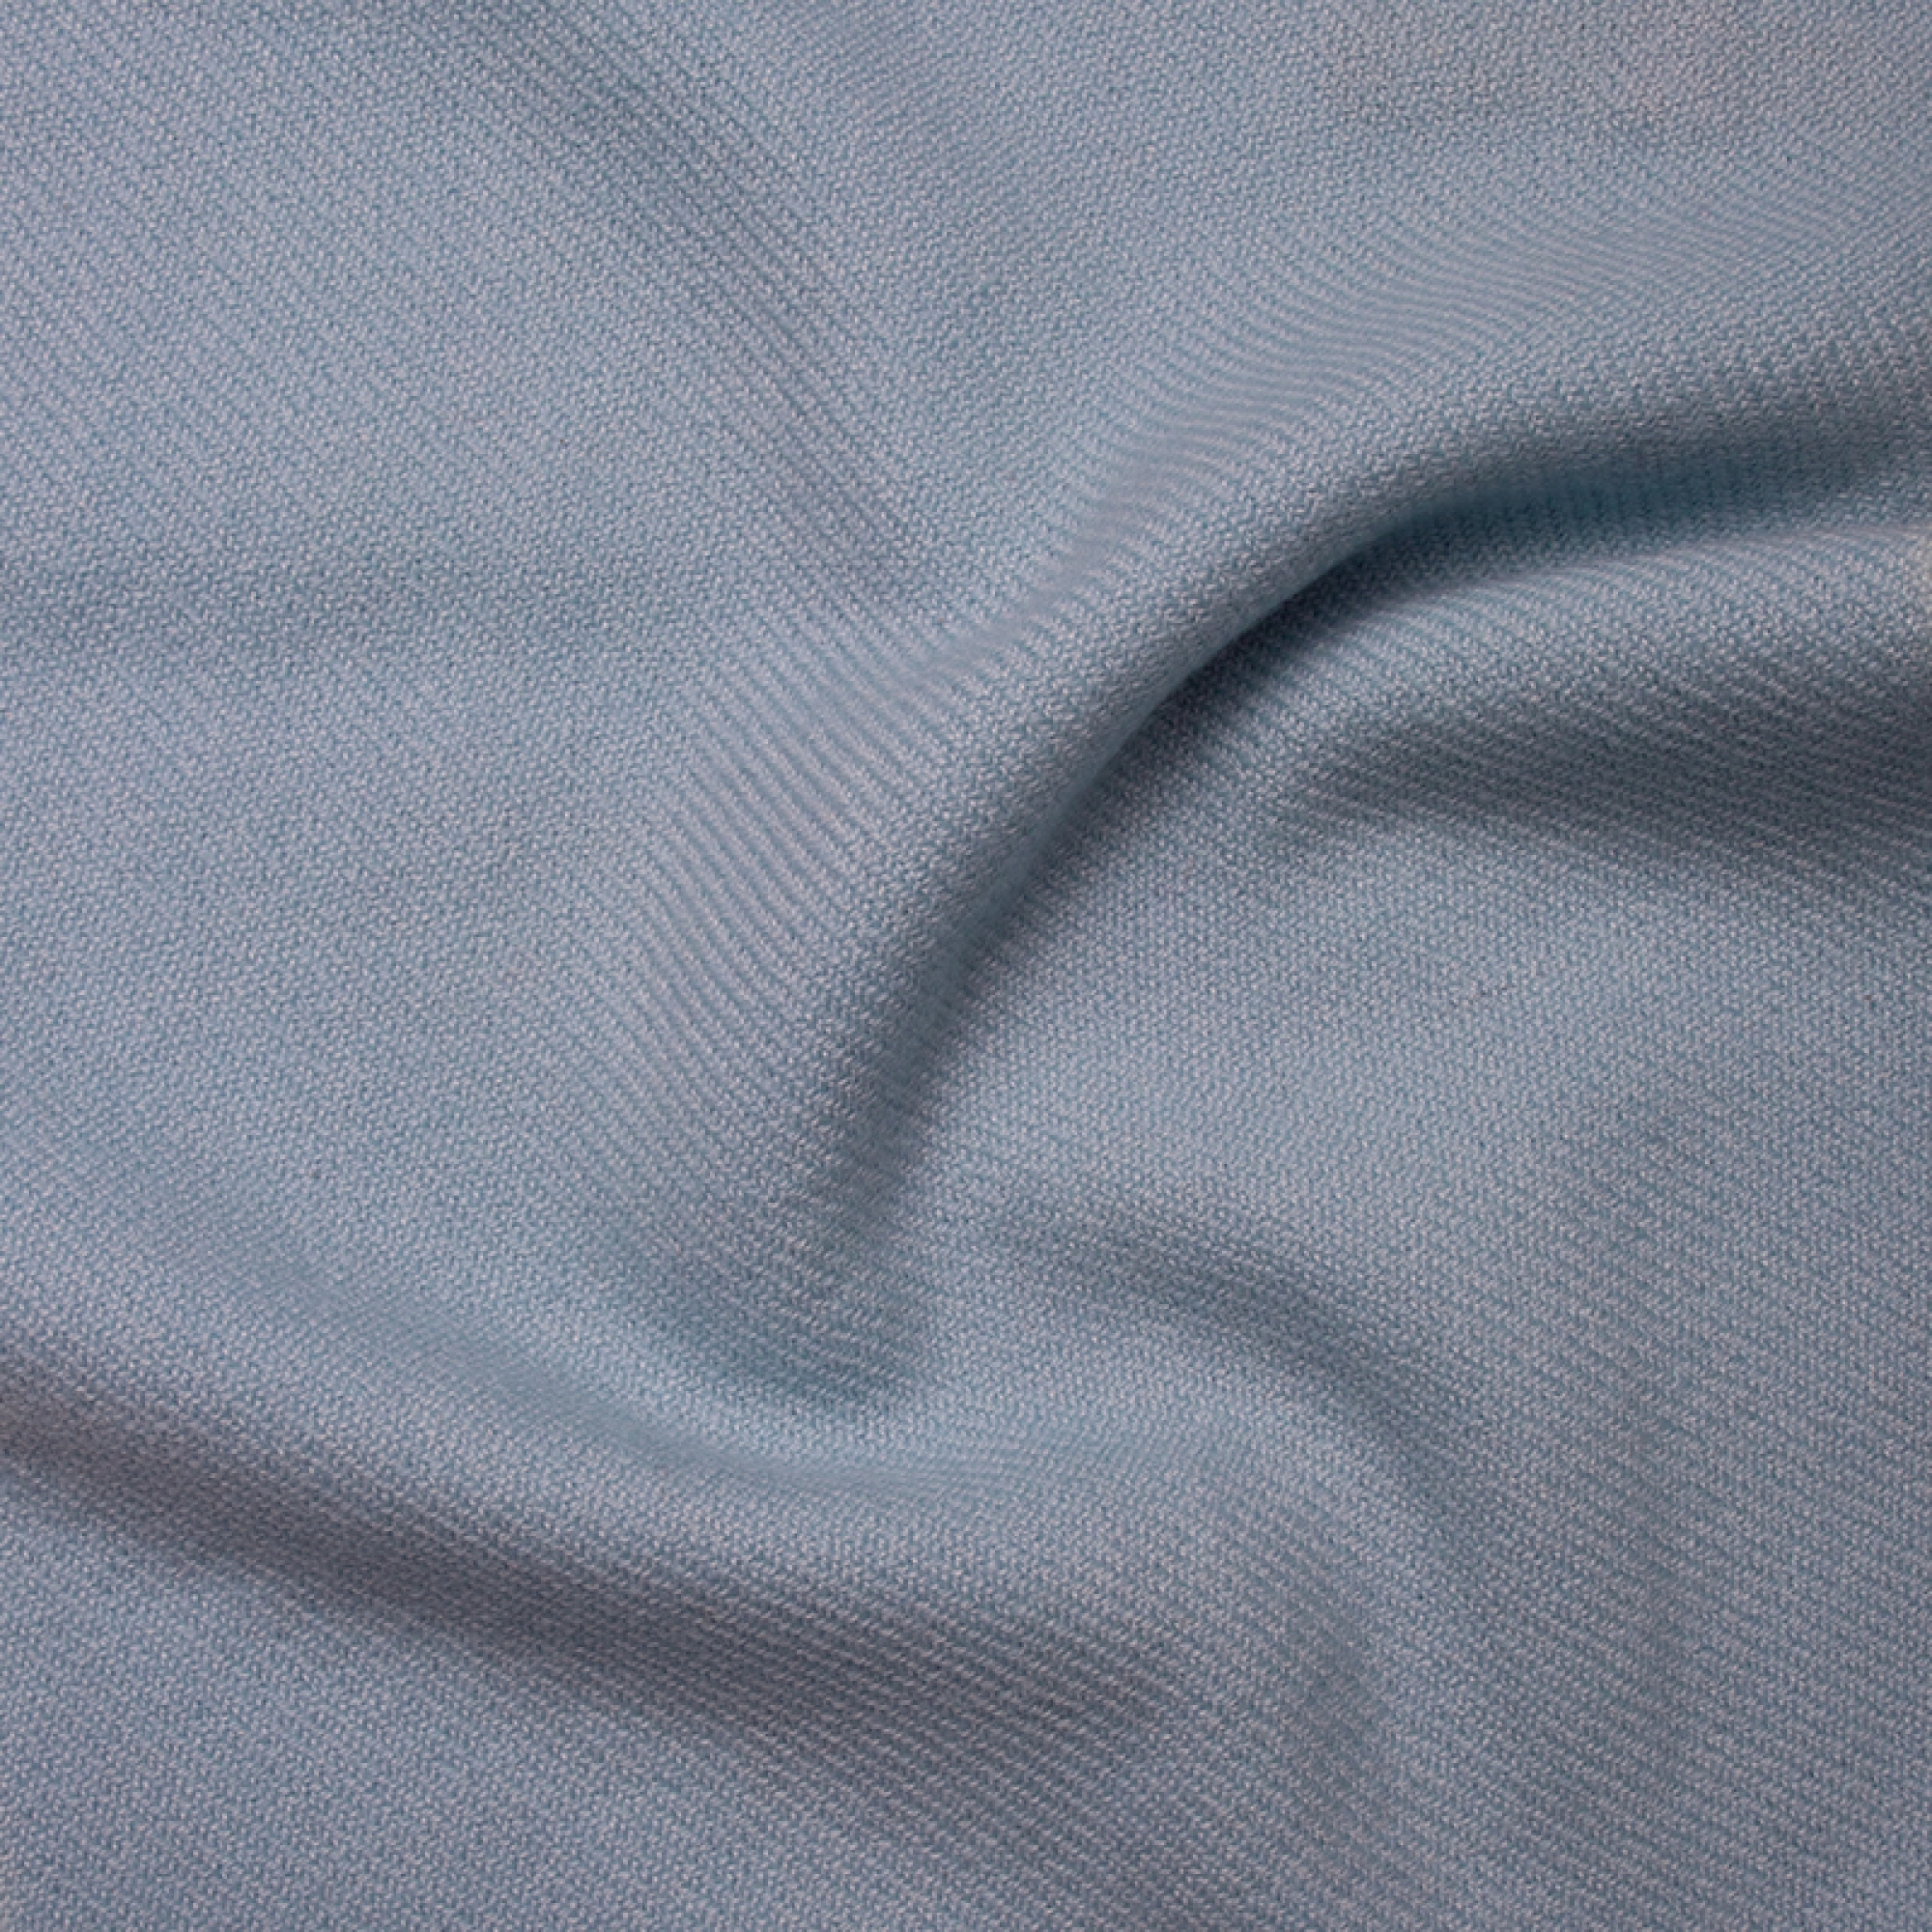 Cachemire accessoires couvertures plaids toodoo plain xl 240 x 260 ciel bleu 240 x 260 cm